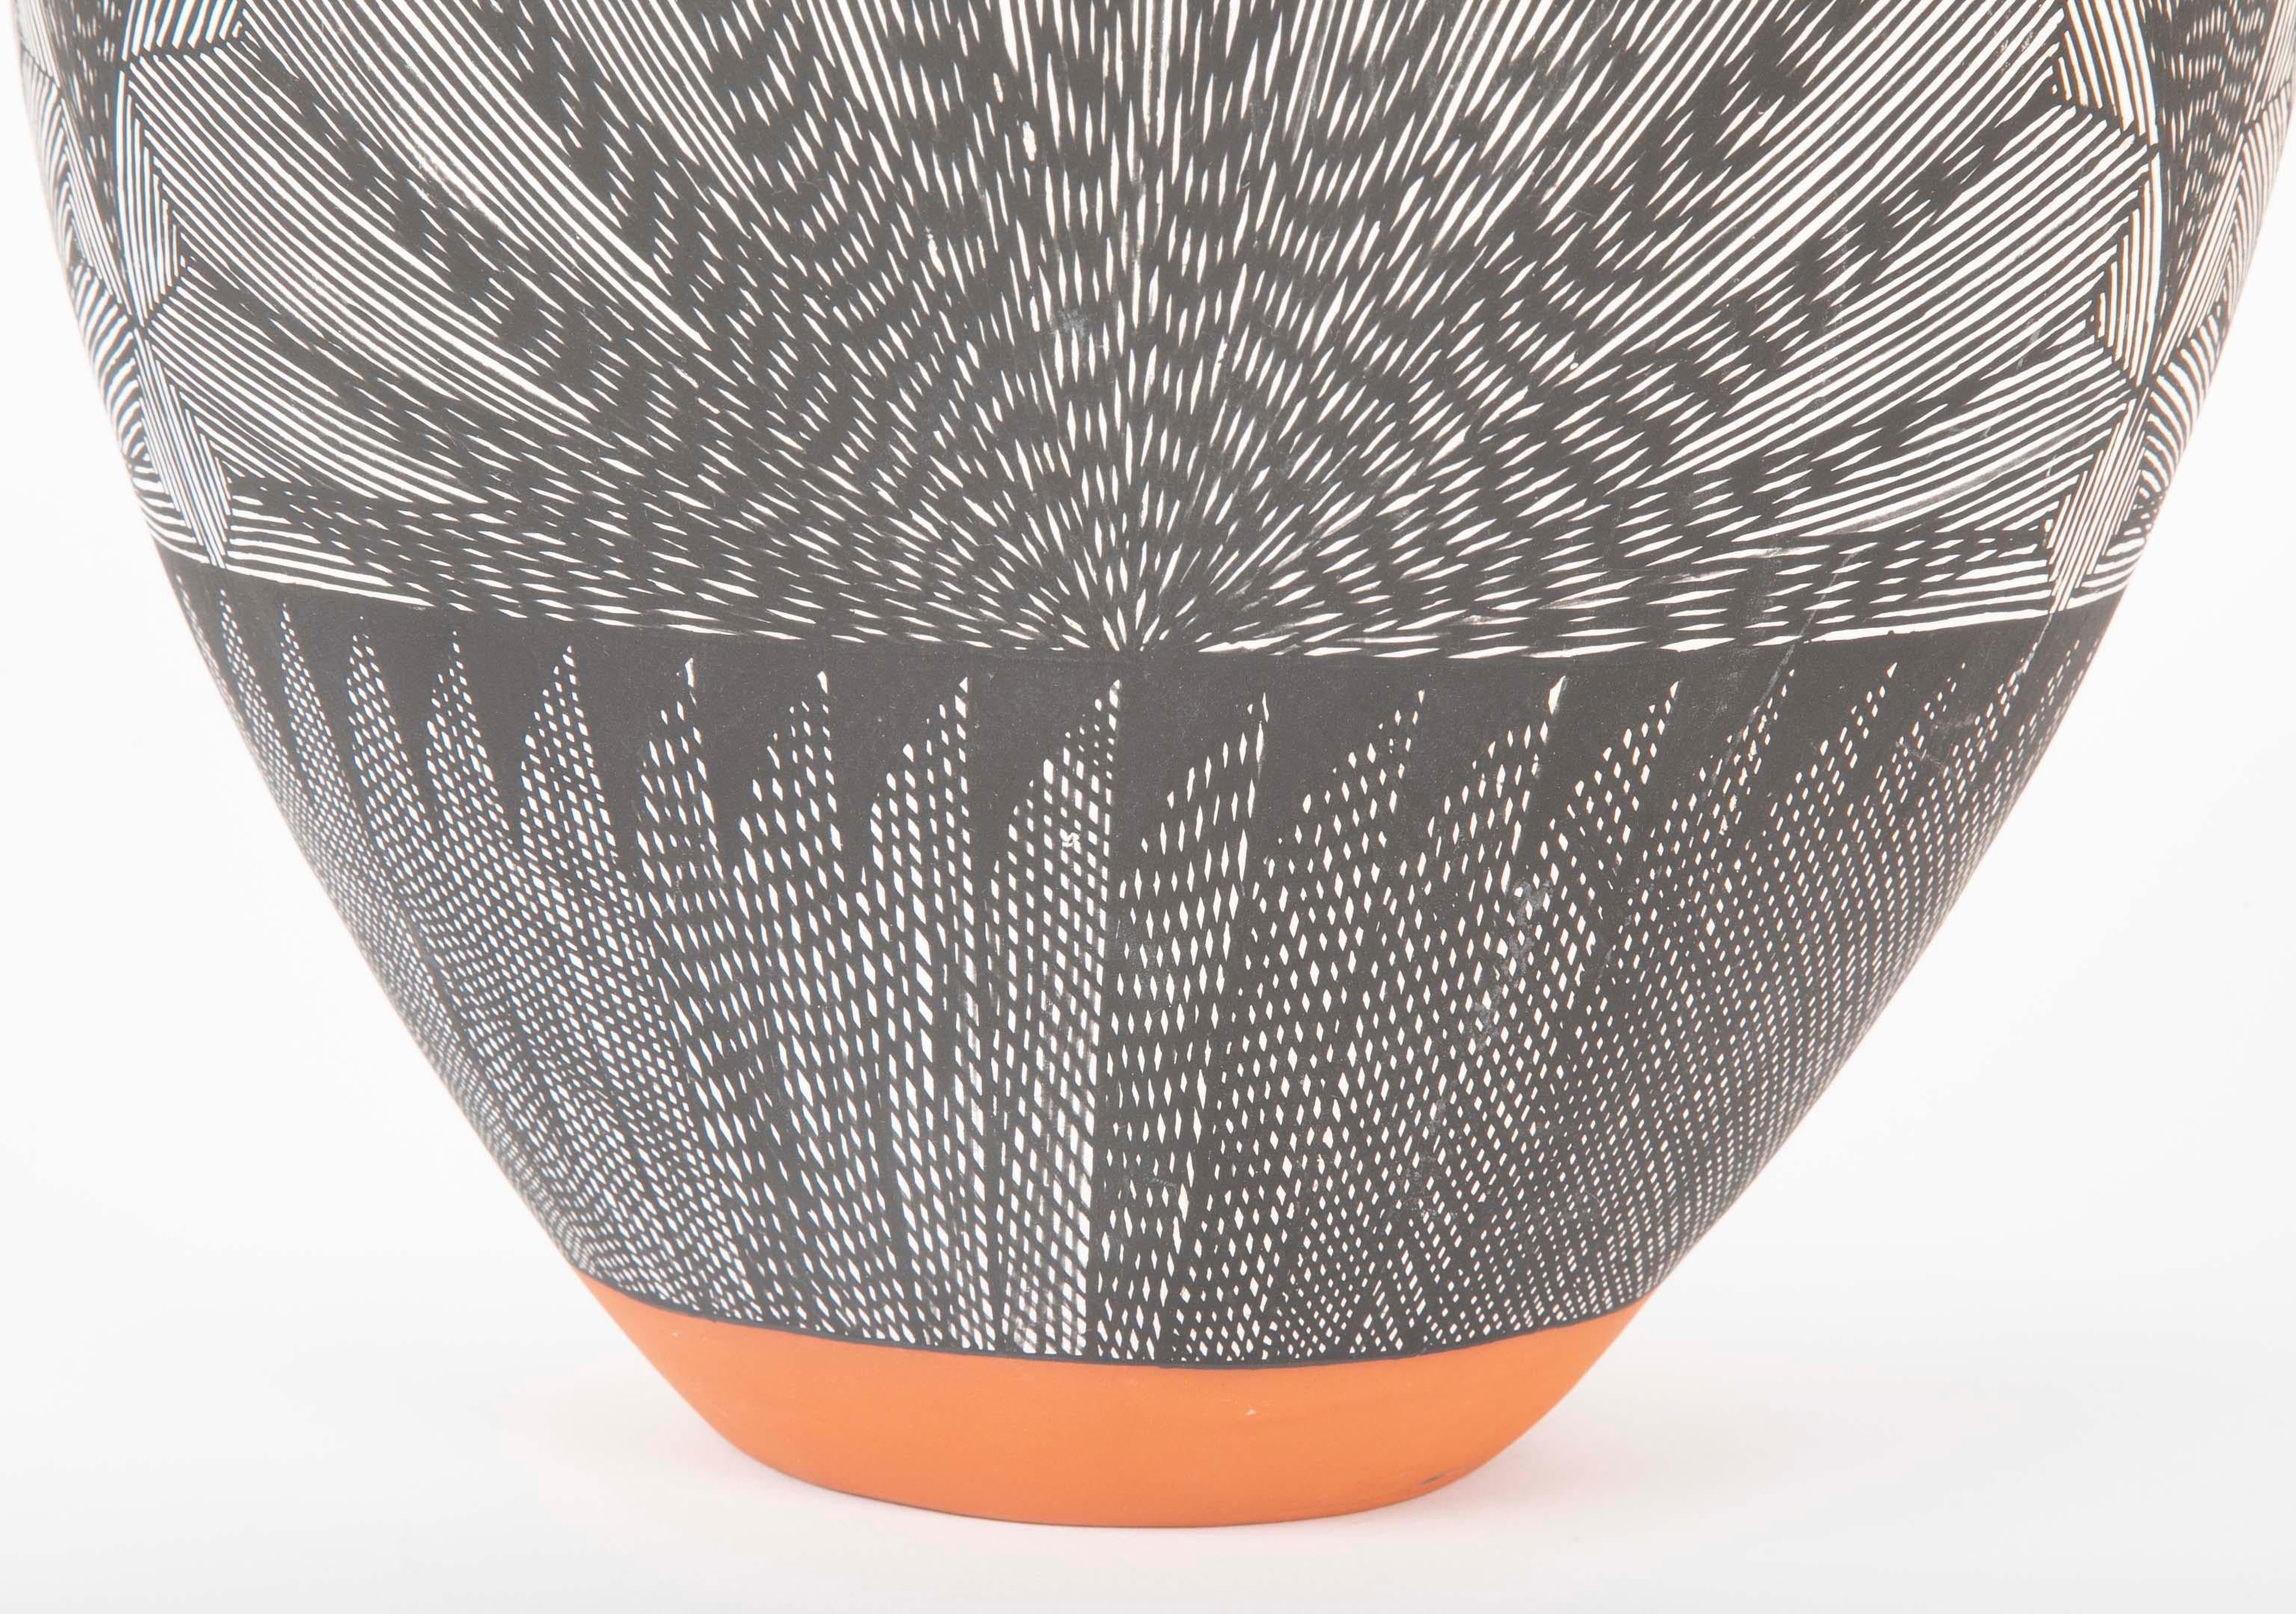 Ceramic Acoma Vessel with Black and White Fine Line Design